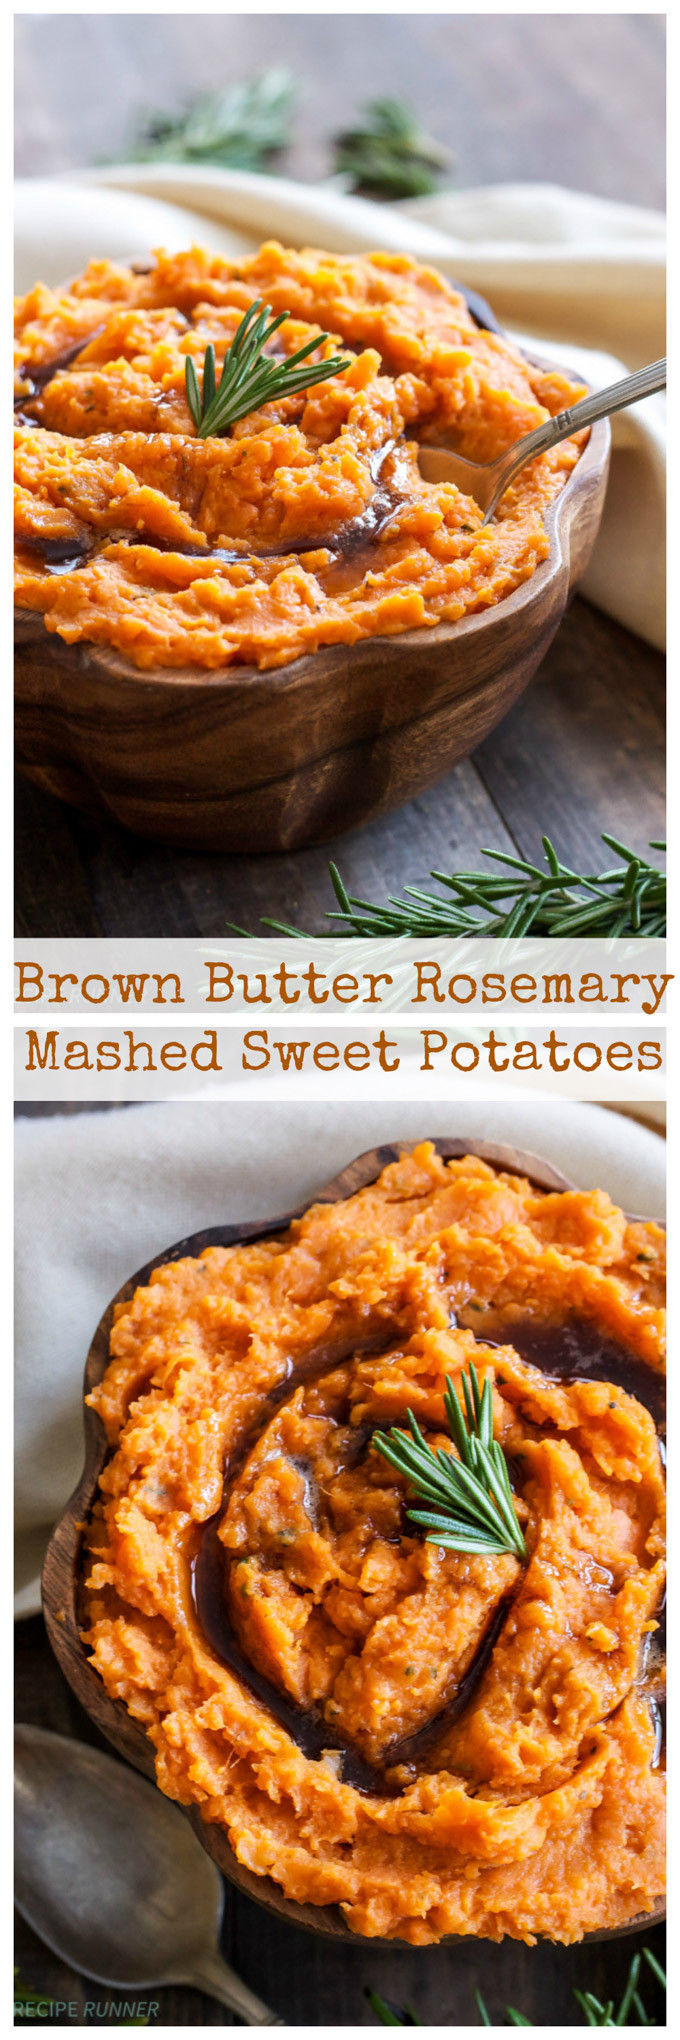 Mashed Sweet Potatoes Thanksgiving
 Brown Butter and Rosemary Mashed Sweet Potatoes Recipe